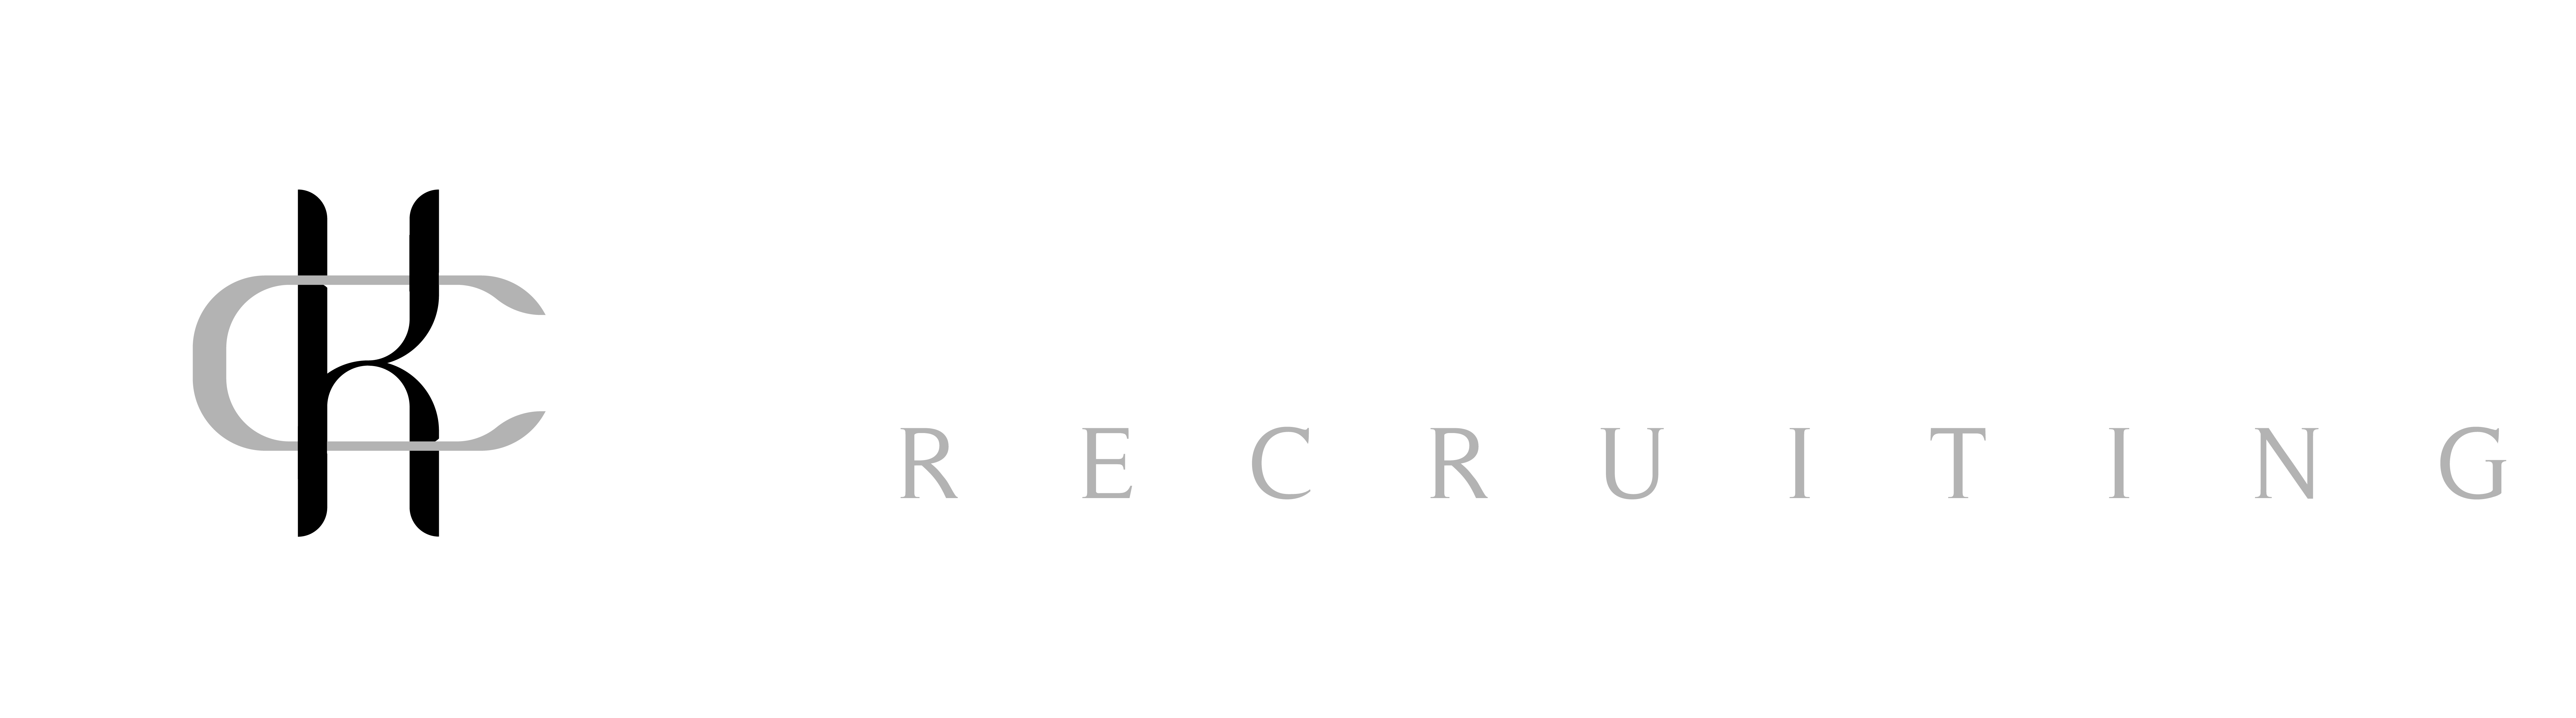 447_KATE CRAWFORD logo-REVERSE